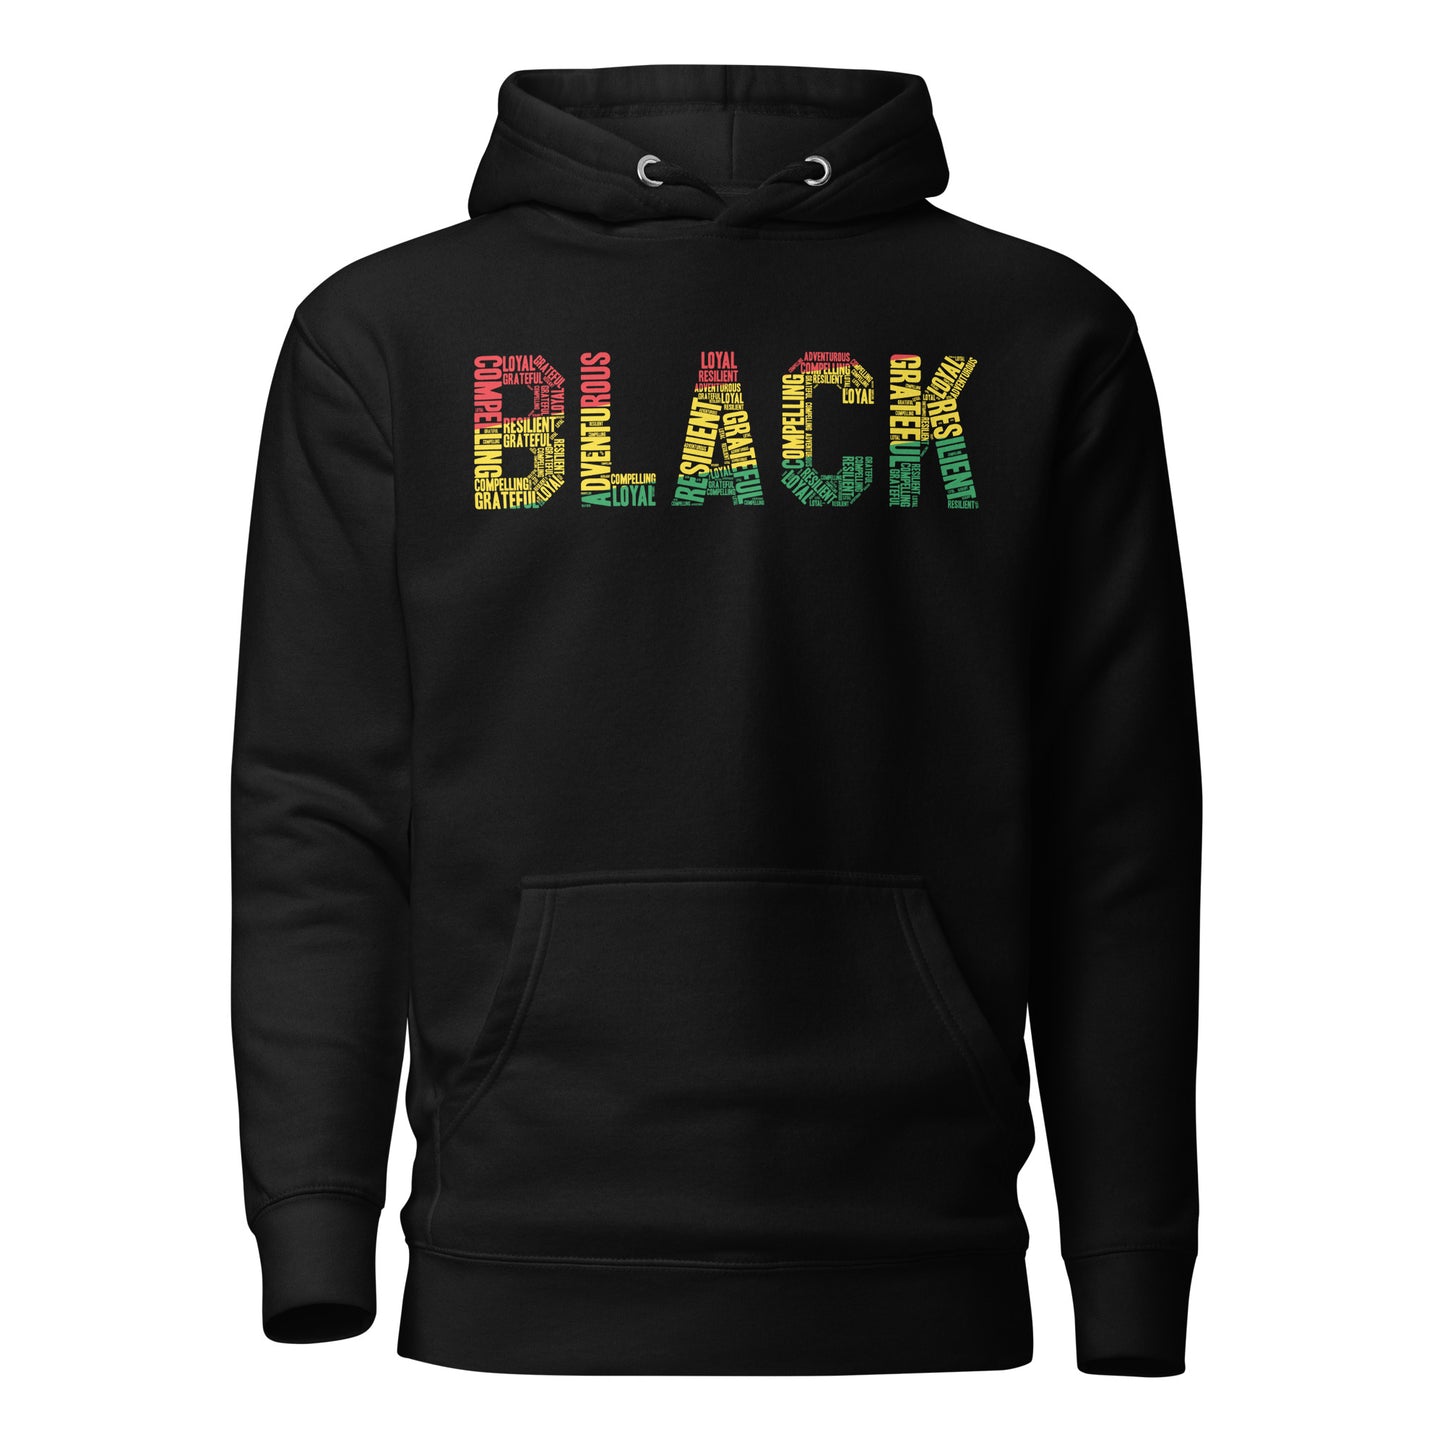 "BLACK" Word Cluster Hoodie